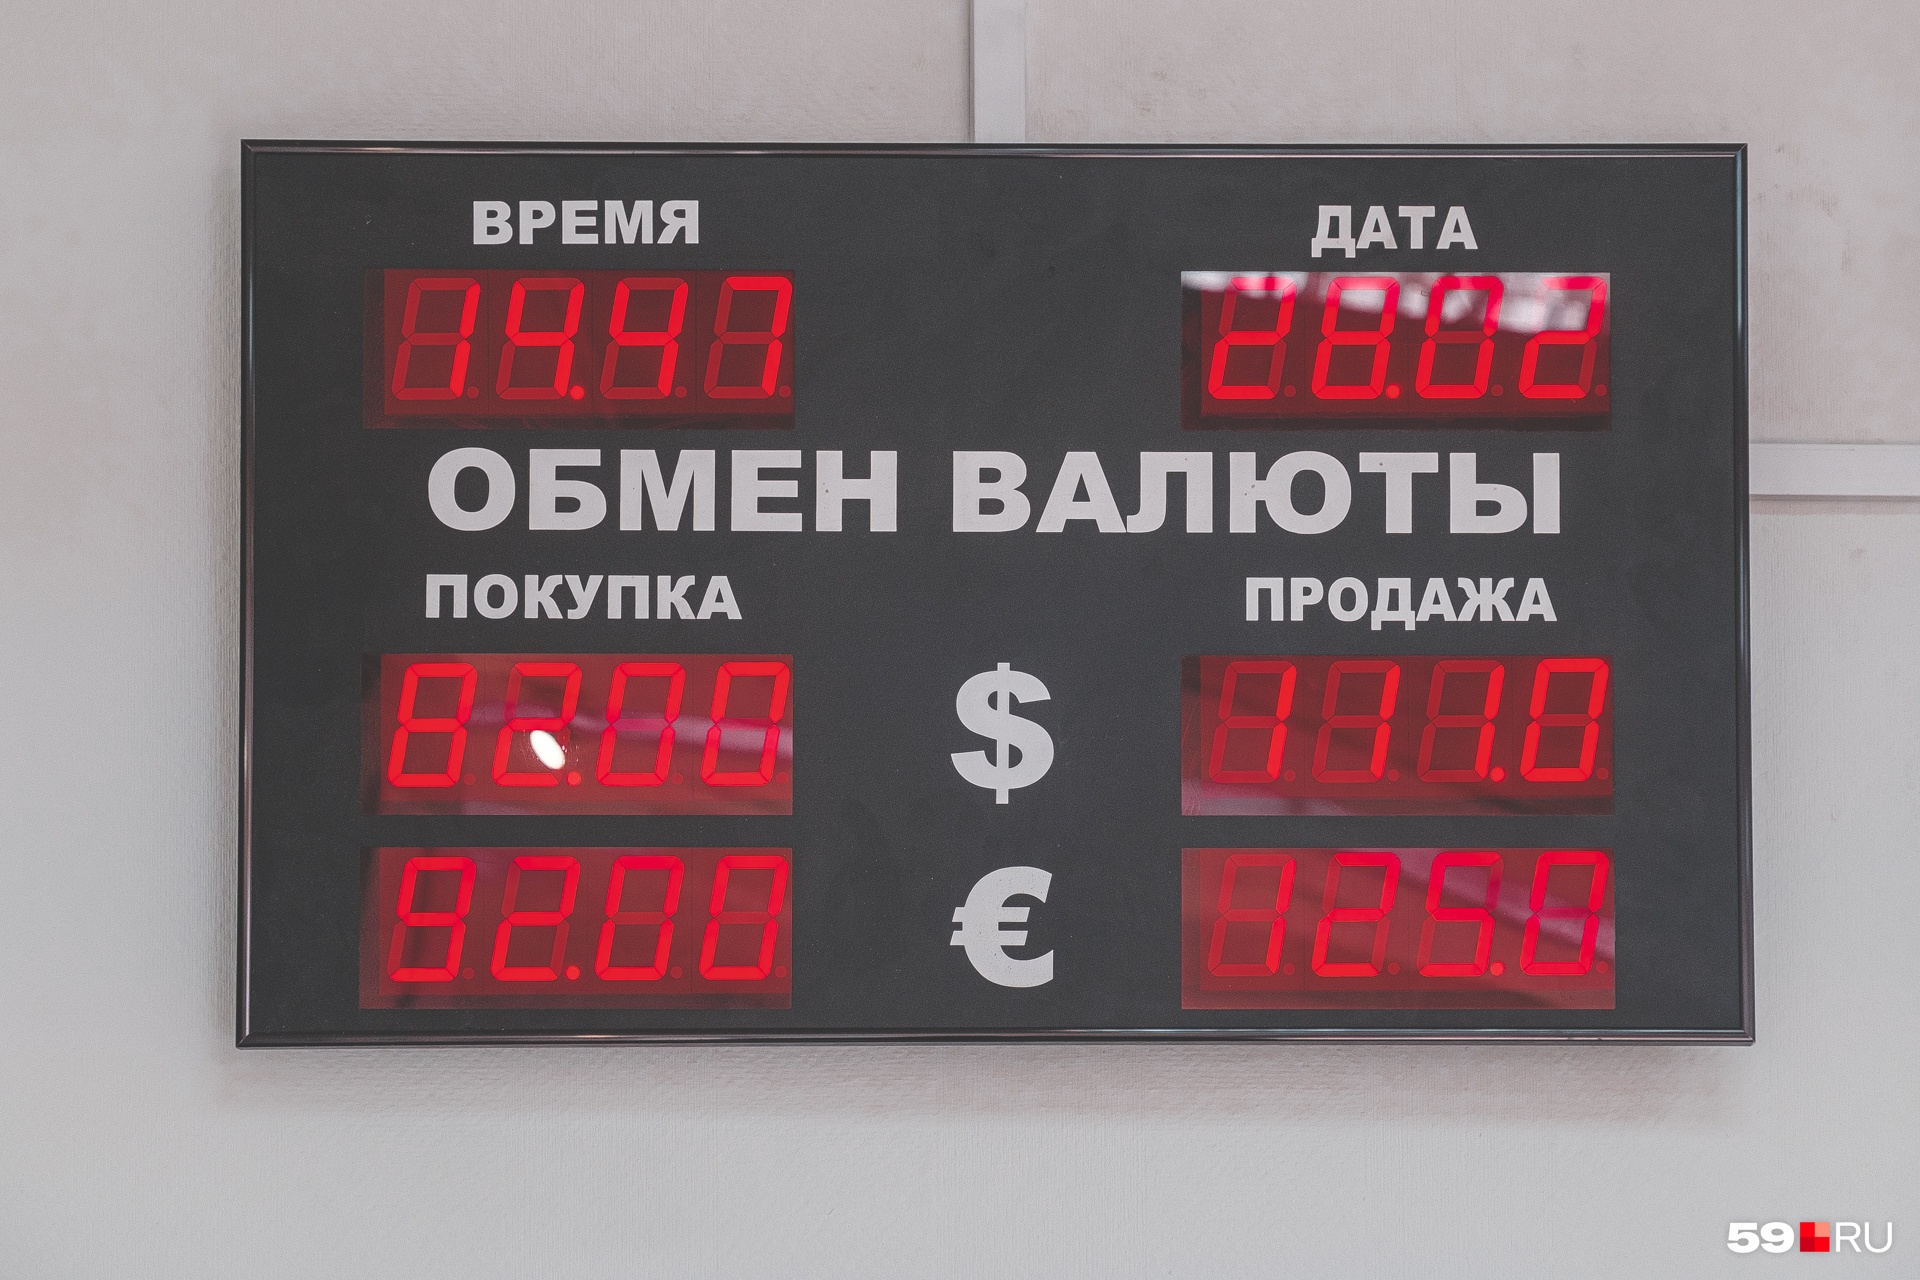 В «Клюкве» расценки дороже: купить долар можно за 82 рубля, продать за 111 рублей, евро — за 92 и 125 рублей соответственно. Но и это не предел